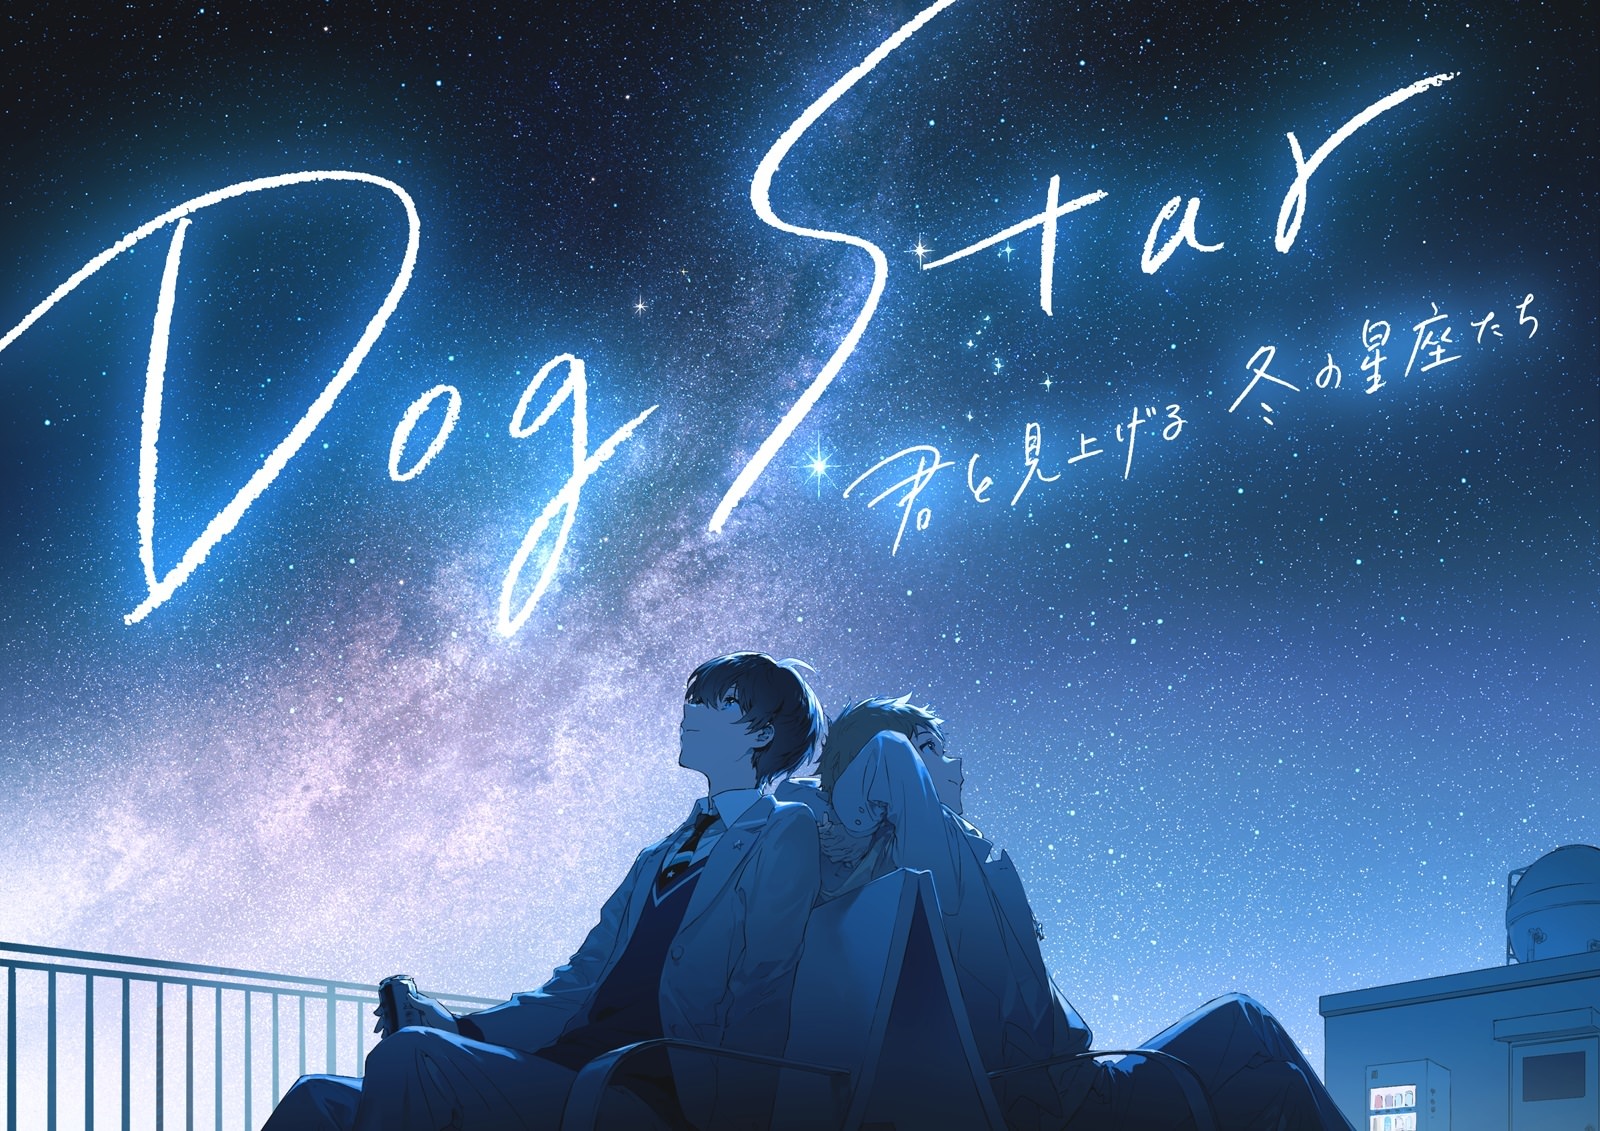 須田景凪 書き下ろし主題歌発表
オープニング記念作品「Dog Star 君と見上げる冬の星座たち」
2021年10月27日（水）より上映